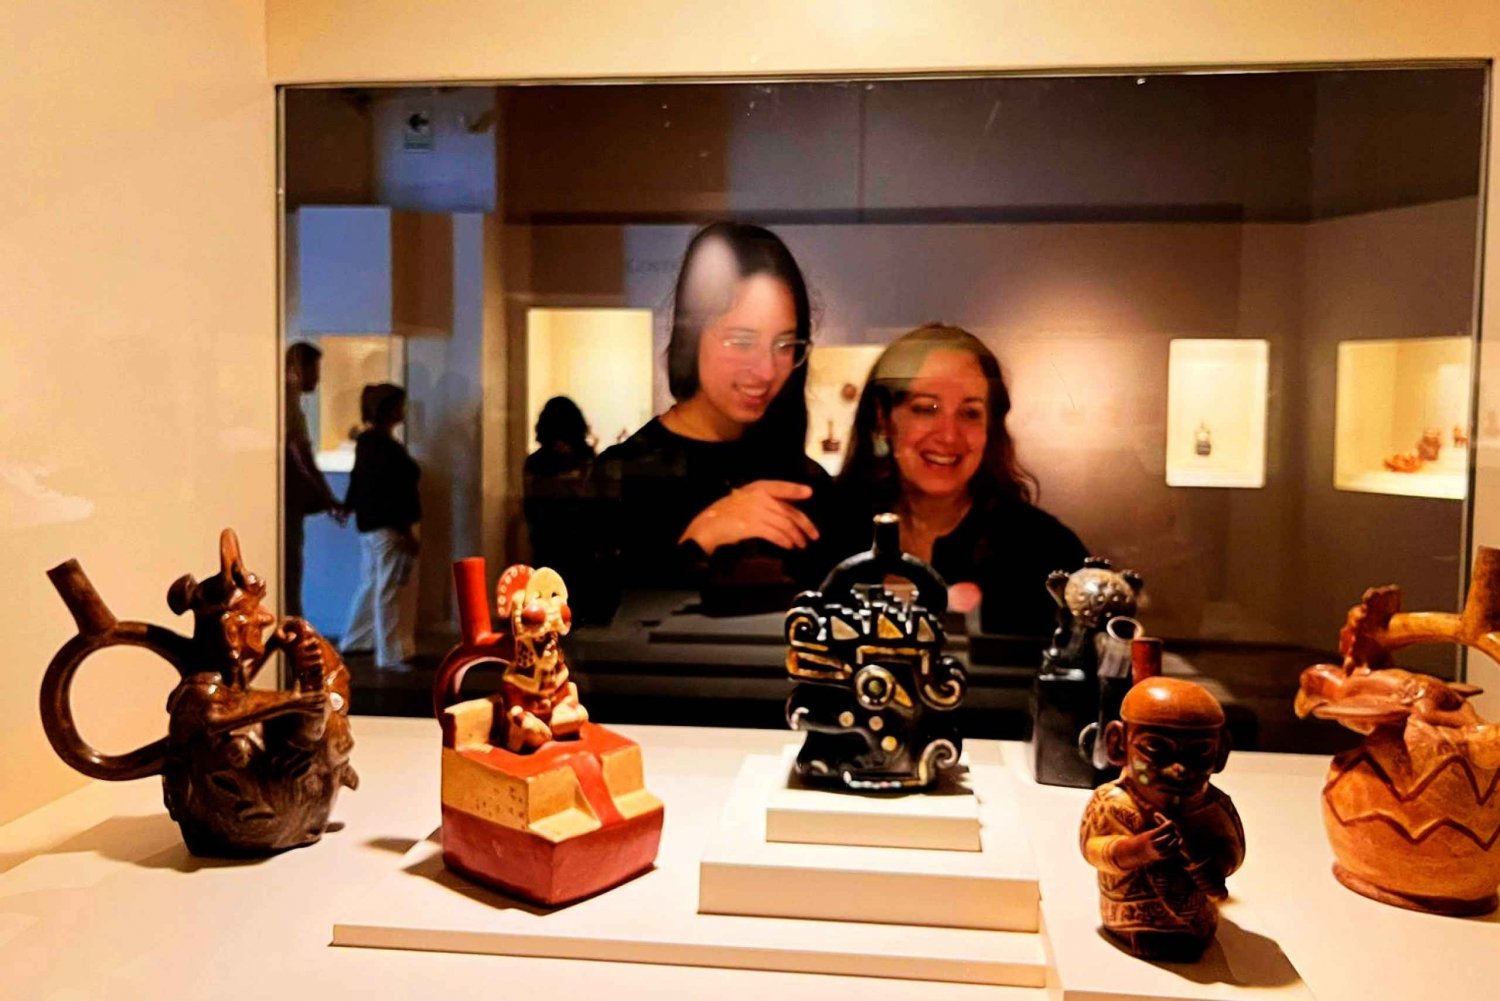 Lima: Ingresso para o Museu Larco e tour guiado com serviço de busca